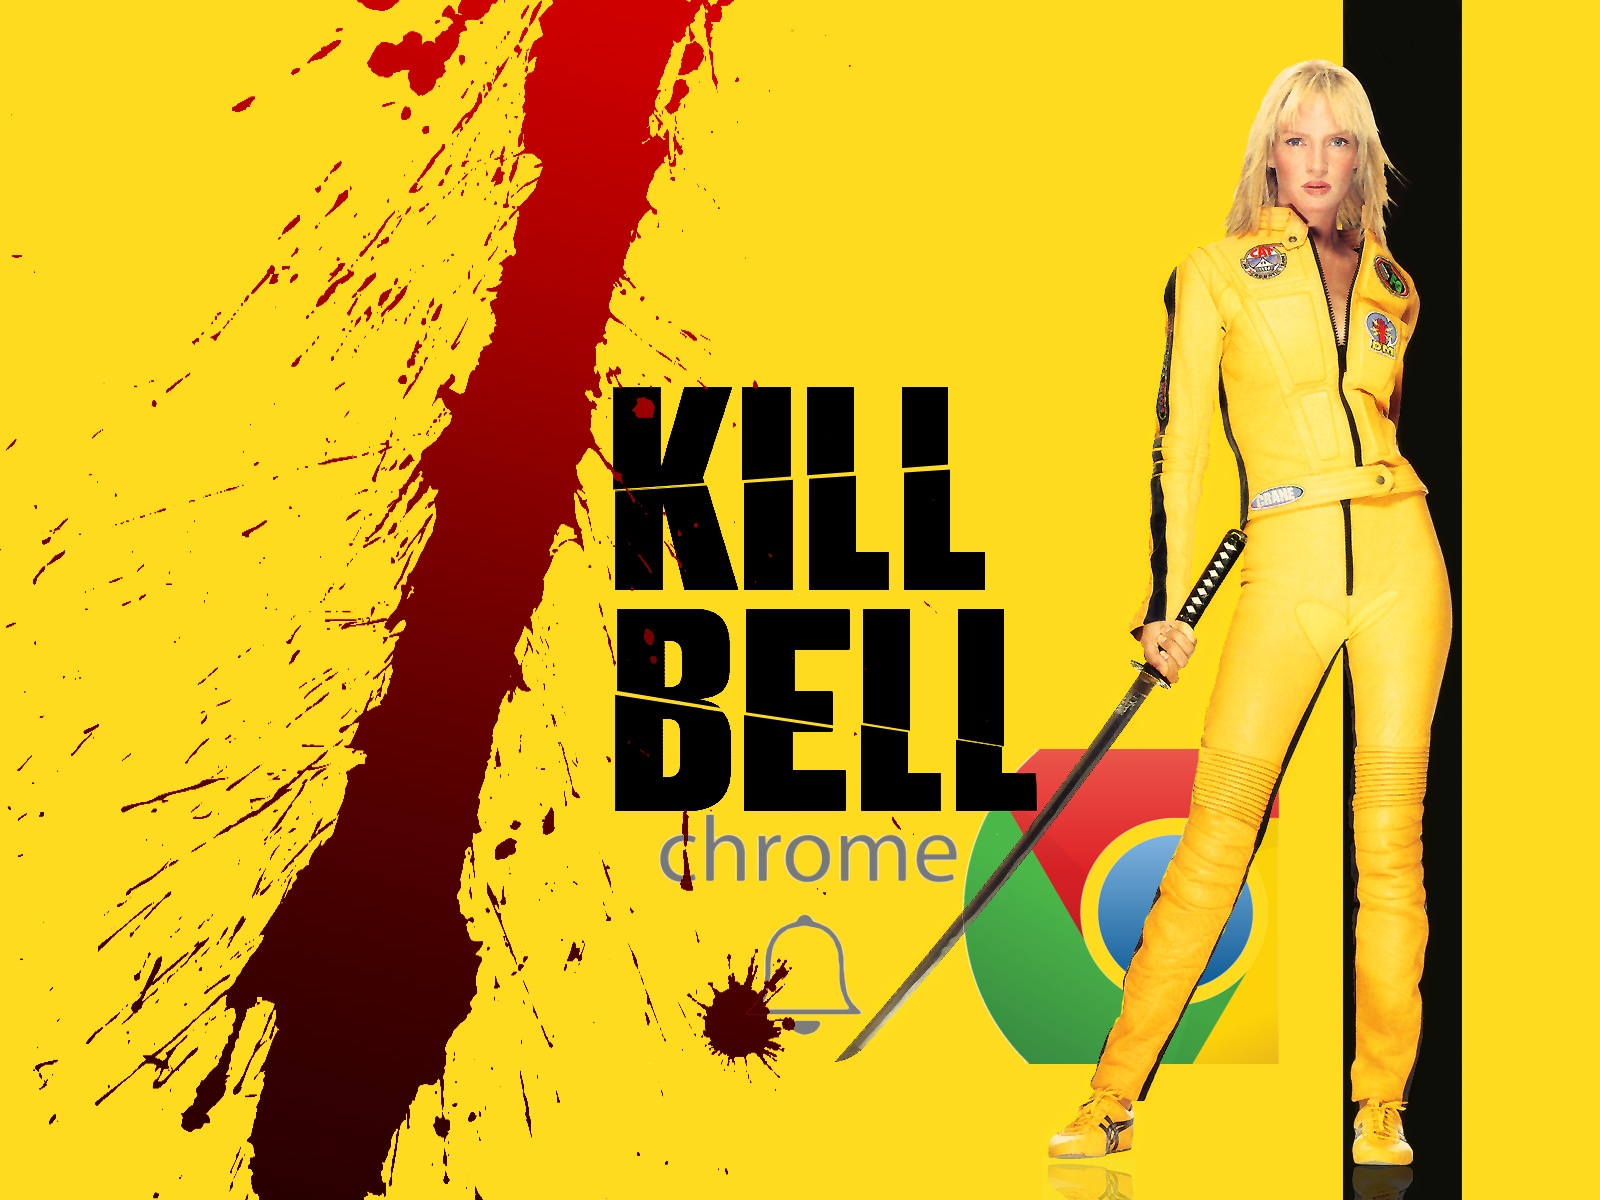 kill_bell_Google_Chrome